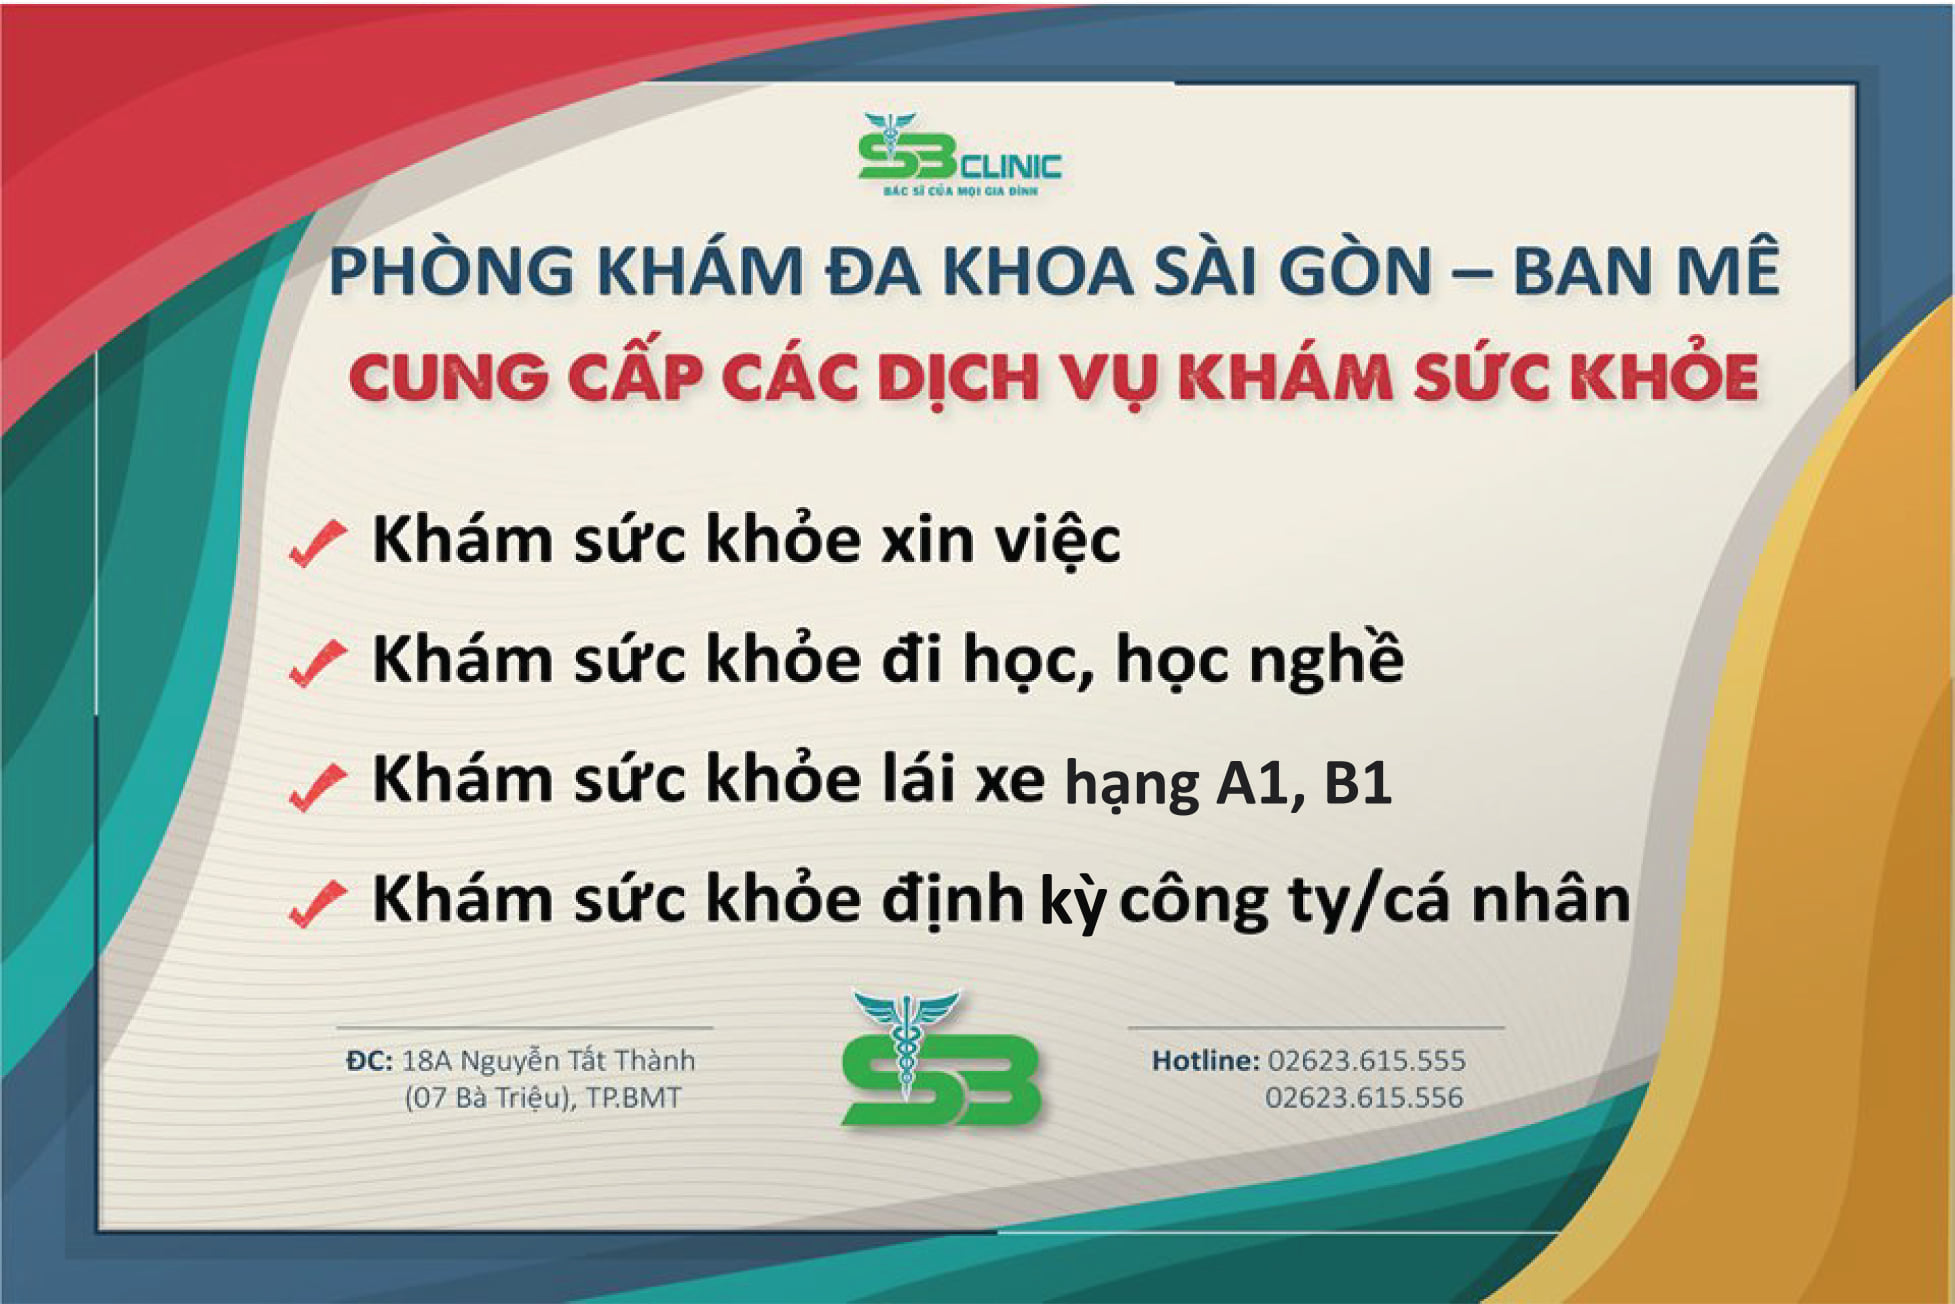 Top 4 dịch vụ khám sức khỏe tại PKĐK Sài Gòn - Ban Mê có thể bạn đang cần